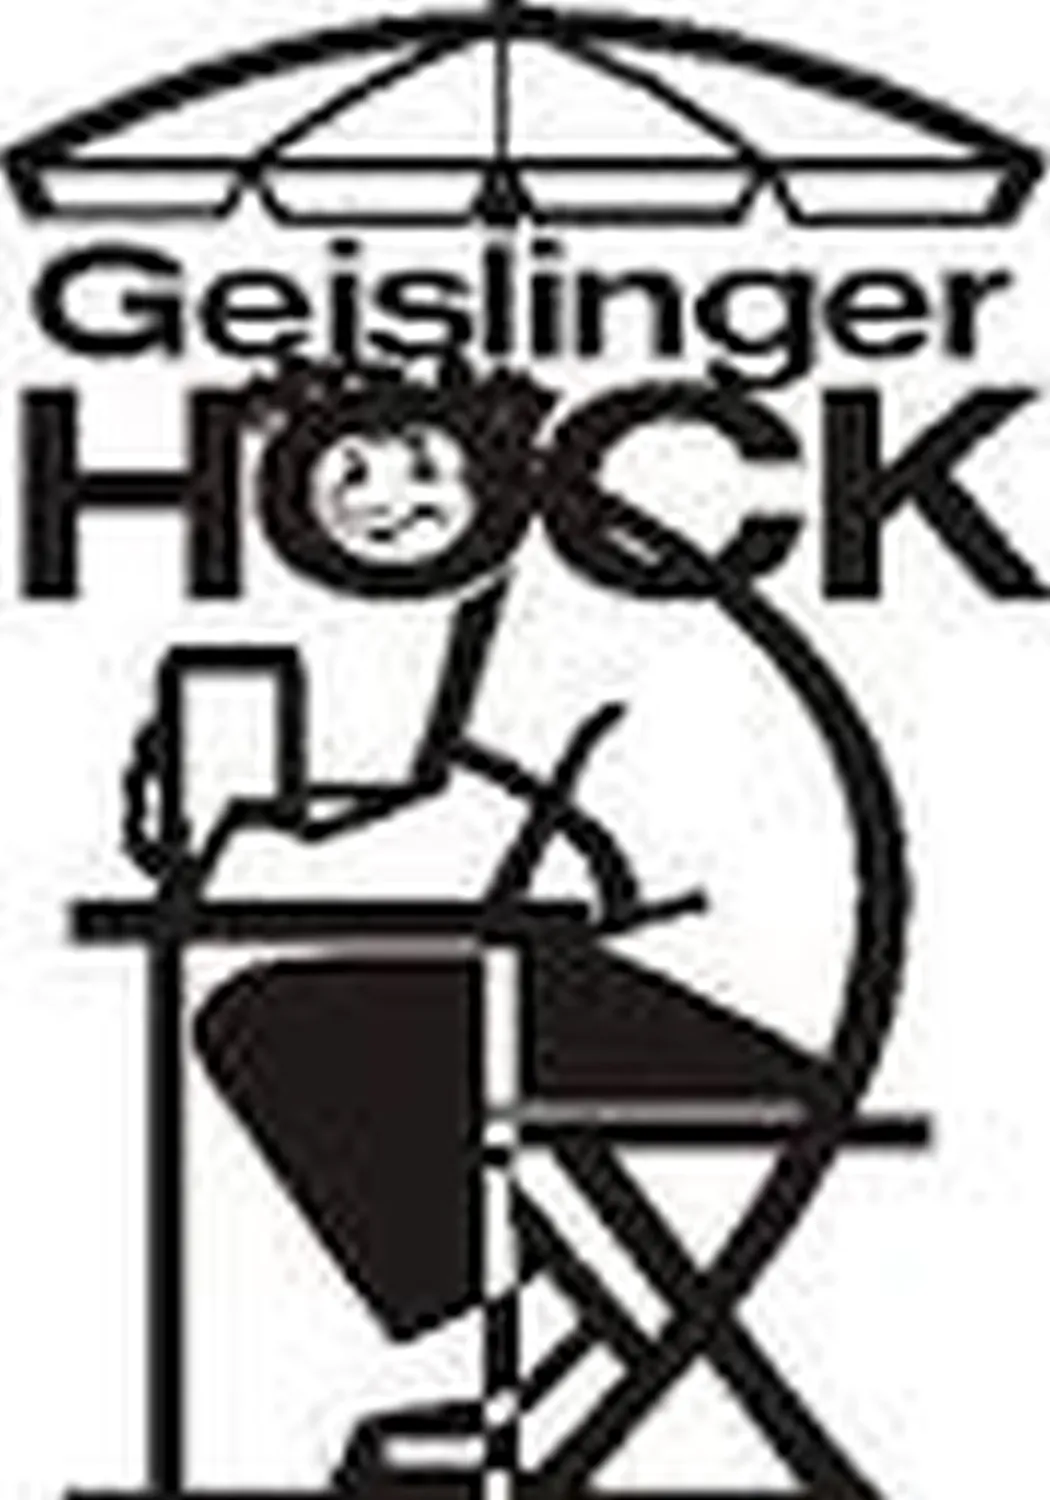 Geislinger Hock logo